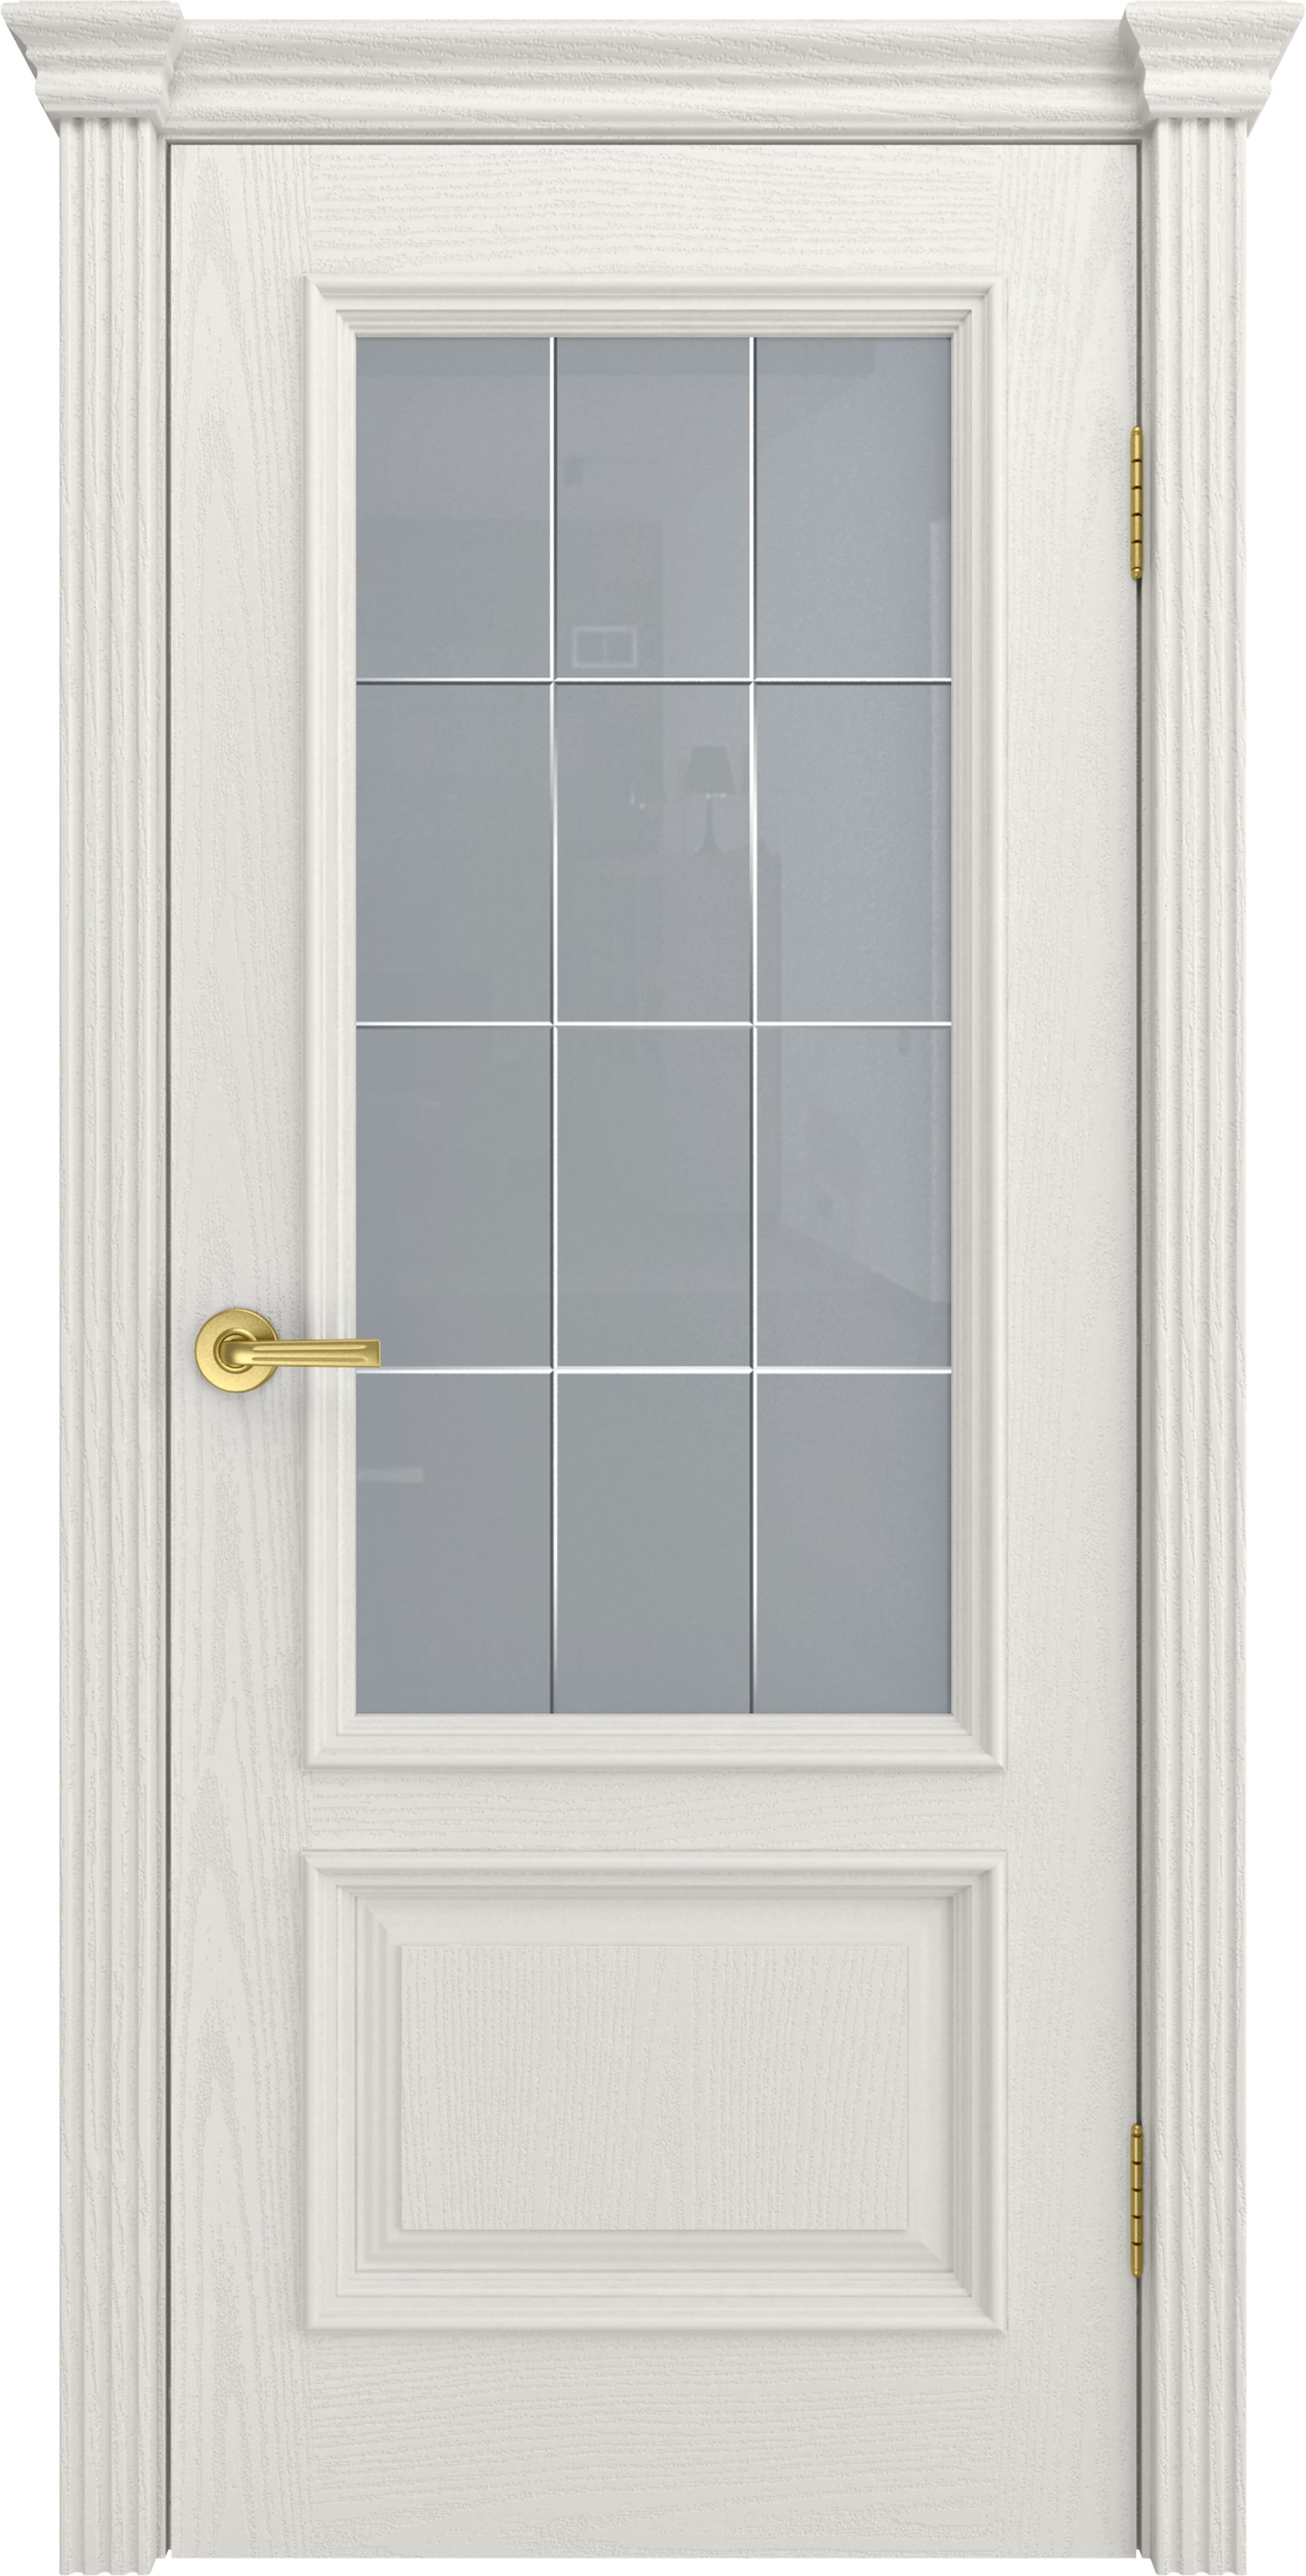 Двери шпонированные ТЕКОНА Фрейм 07 со стеклом Бьянко размер 200 х 70 см. артикул F0000048810